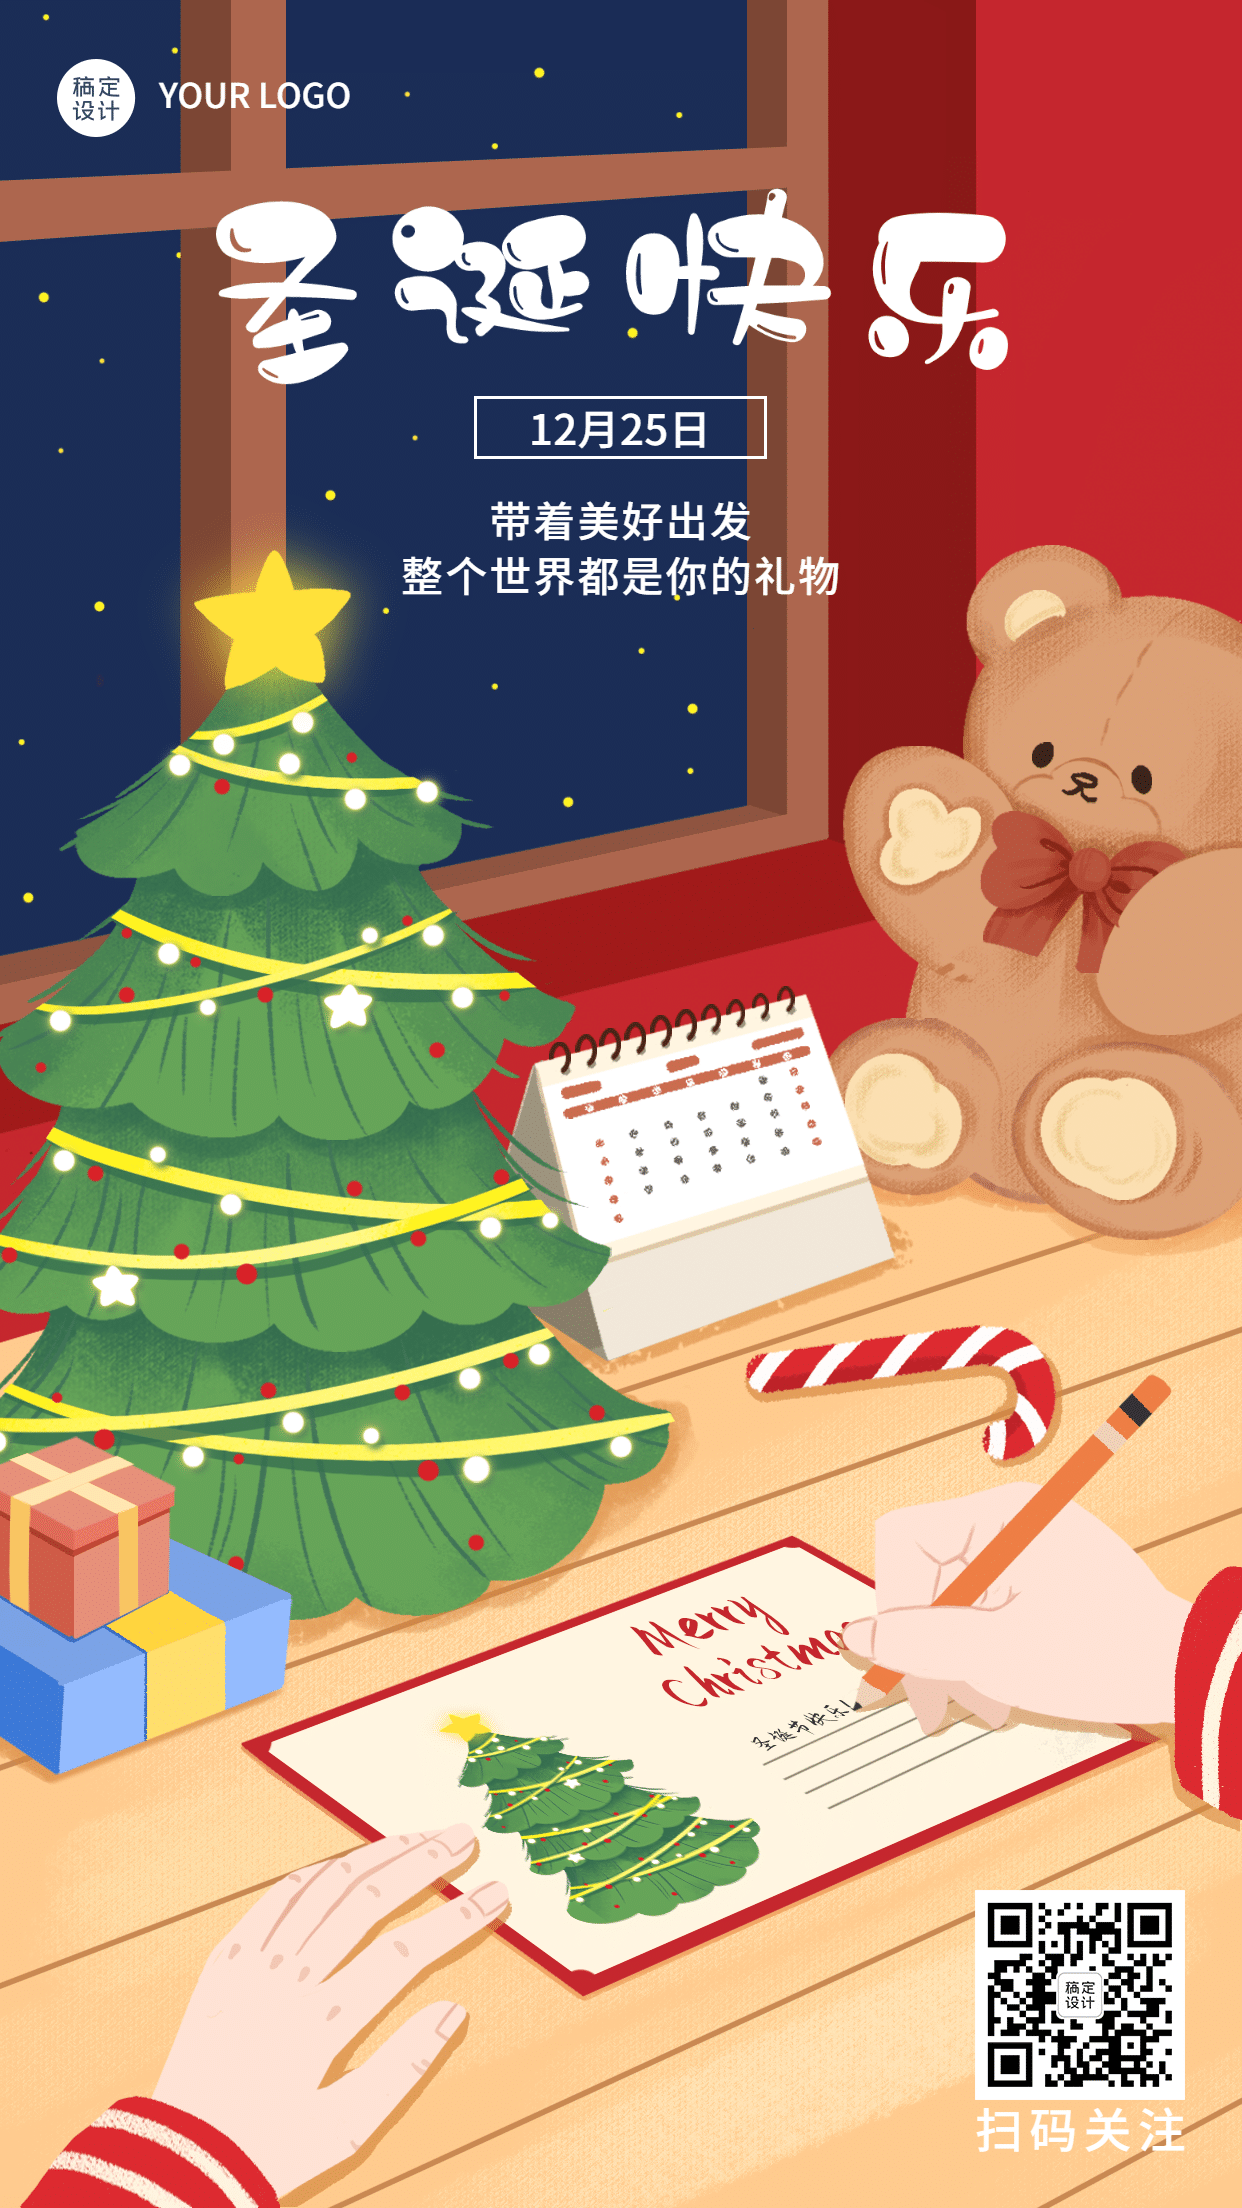 圣诞节快乐祝福贺卡手绘插画手机海报预览效果